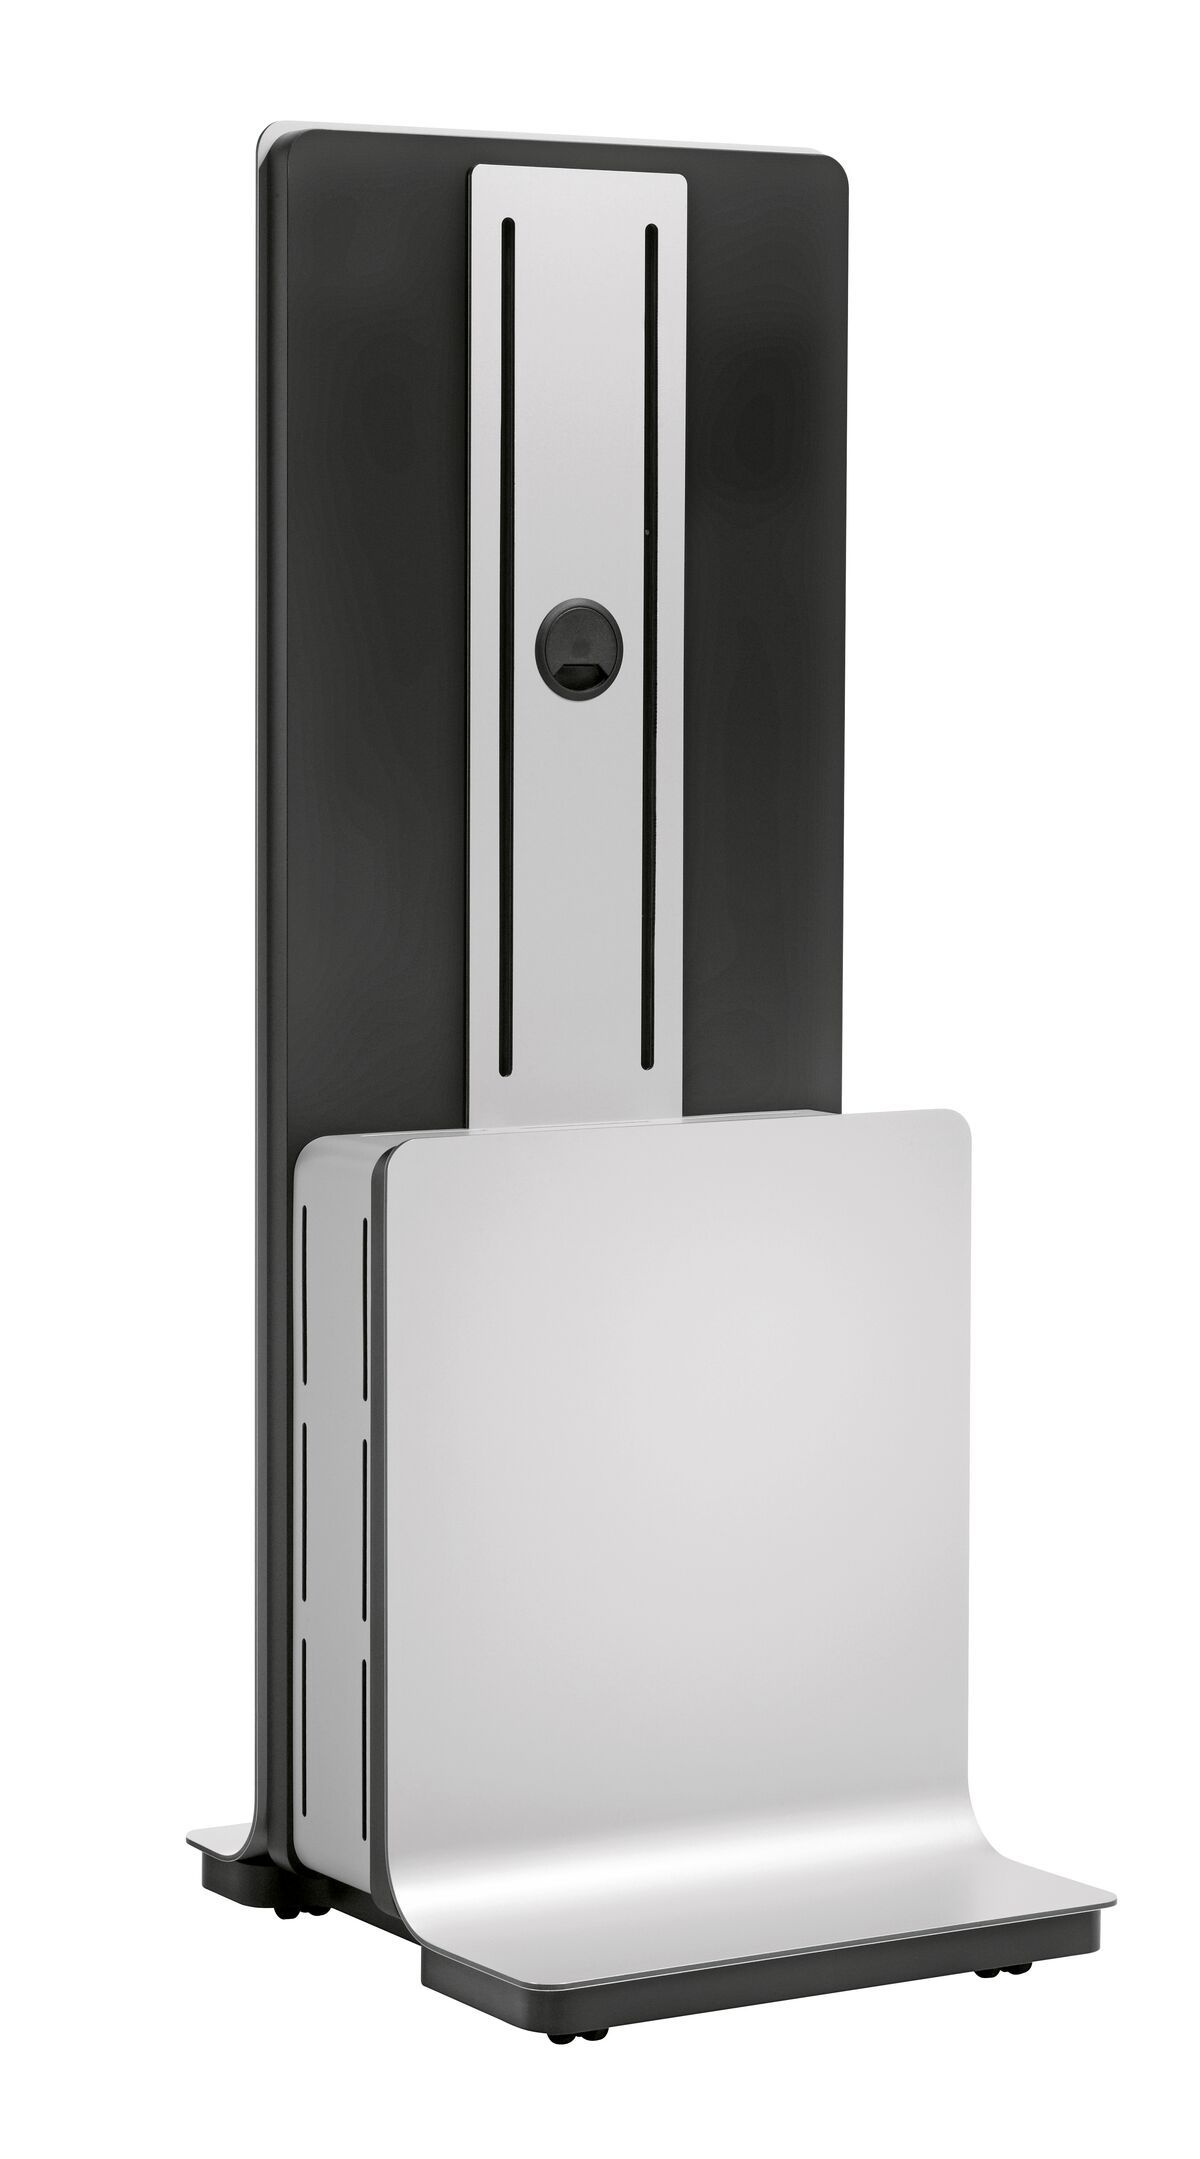 Vogel's PFF 5100 Videoconferencing meubel - Product